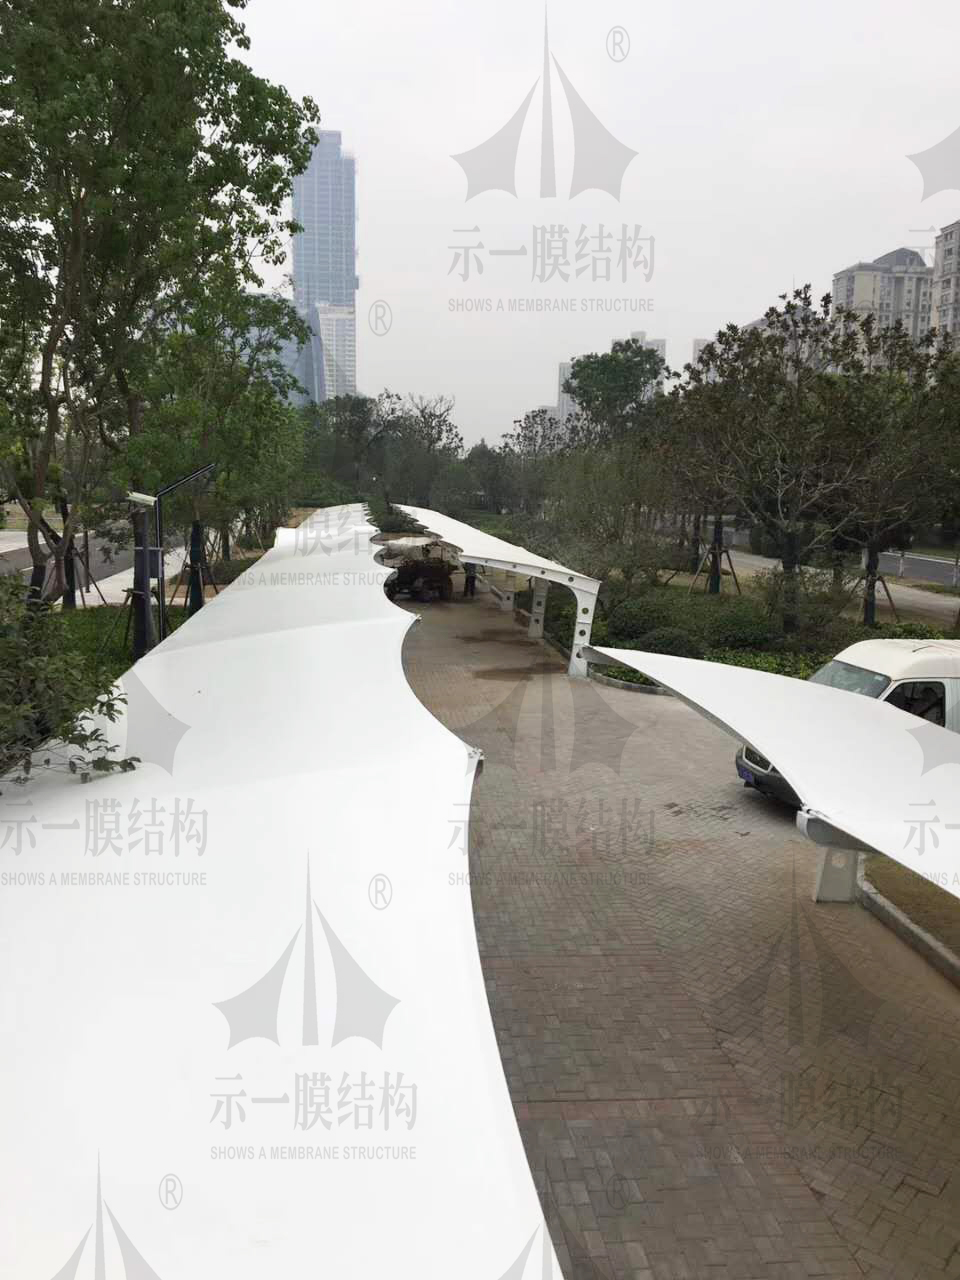 上海示一膜结构有限公司南通能达大厦电动车停车棚